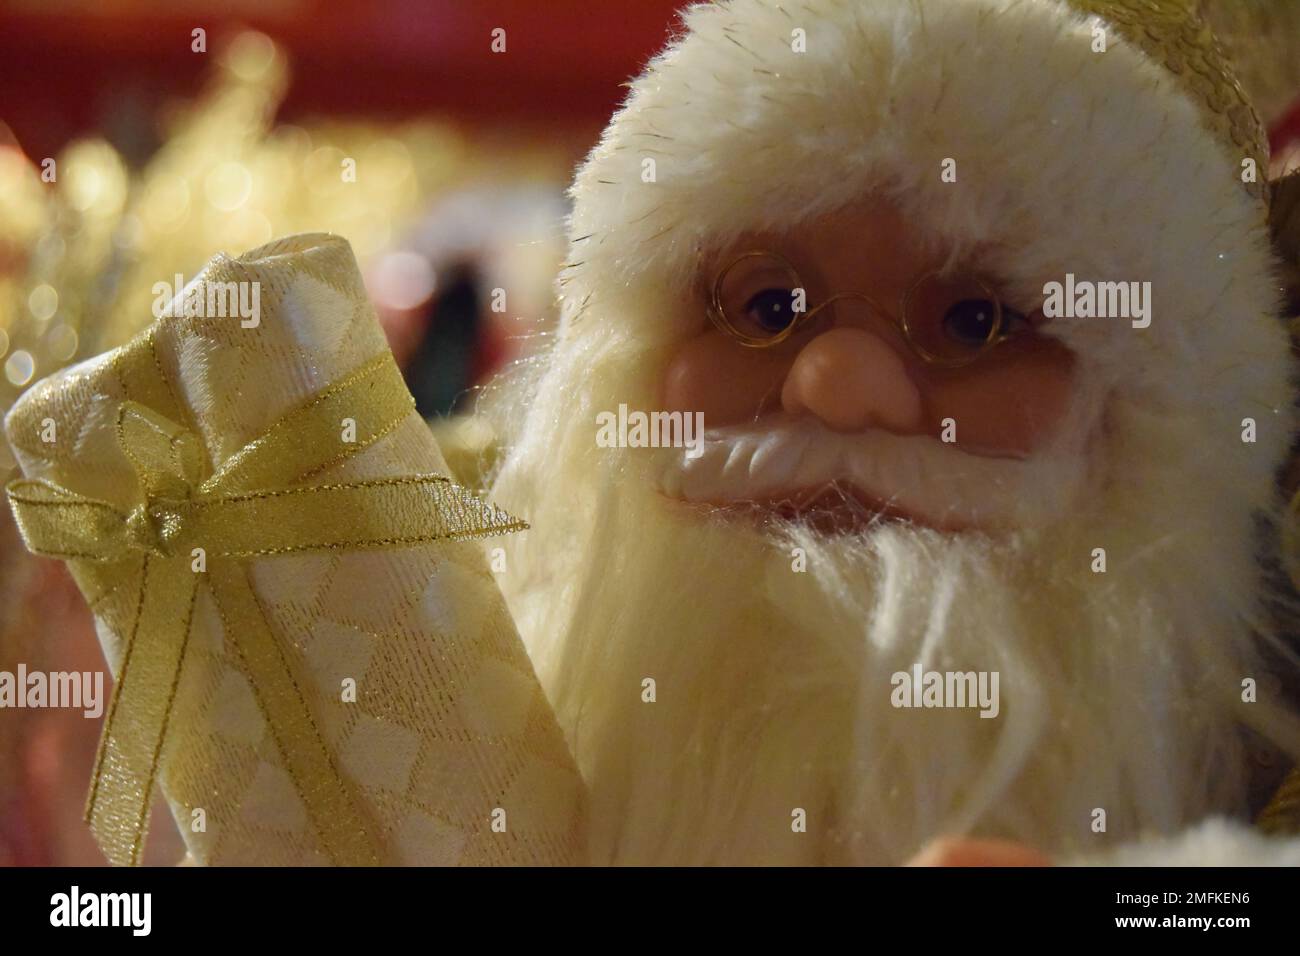 Ein traditionelles Weihnachtsmann-Weihnachtsdekorat in Creme und Gold mit weißem Bart und goldenen Gläsern und einem eingewickelten Weihnachtsgeschenk. Stockfoto